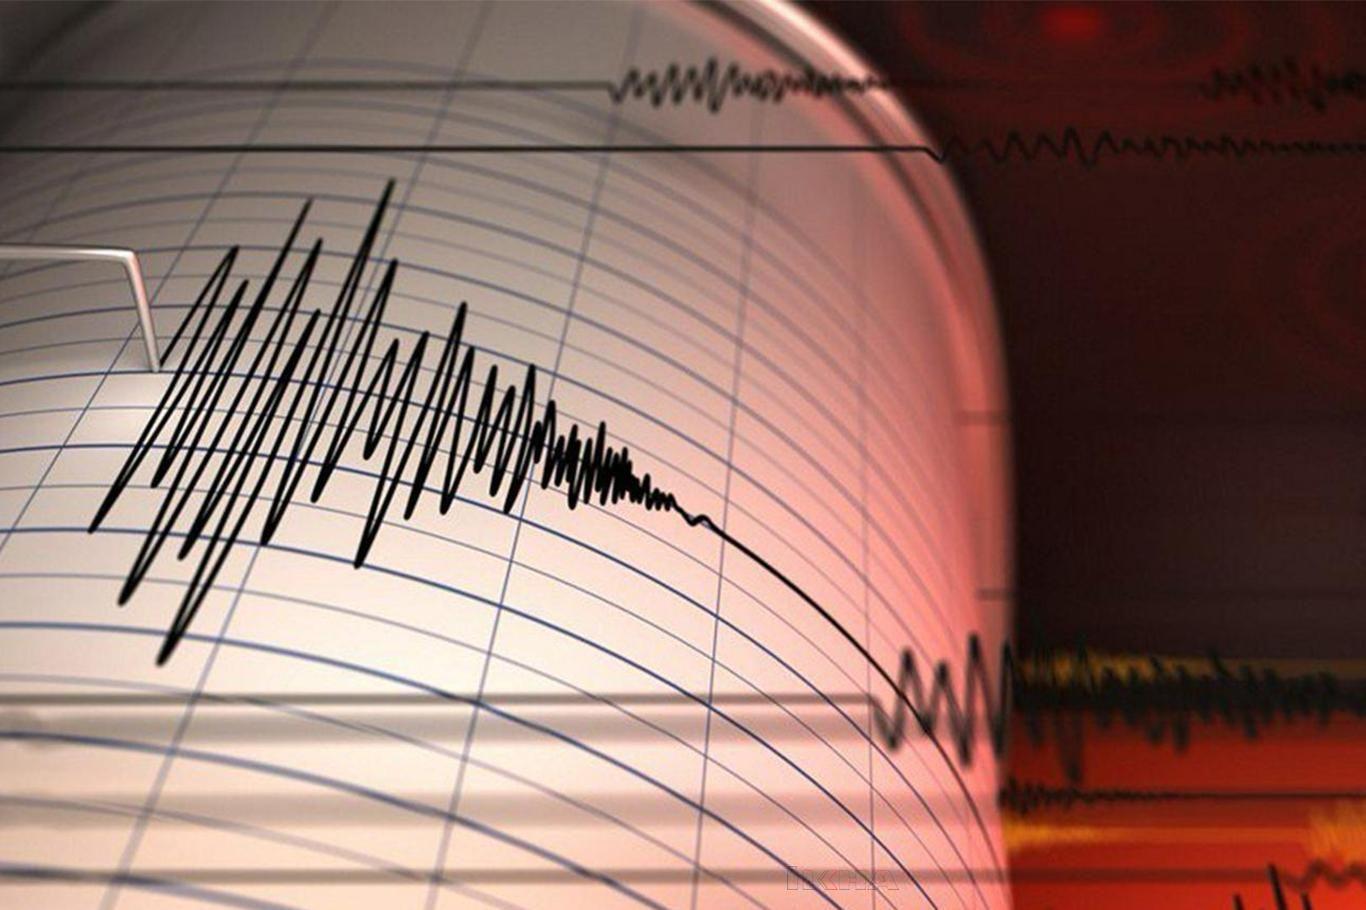 Tanzanya'da 5,9 büyüklüğünde deprem meydana geldi